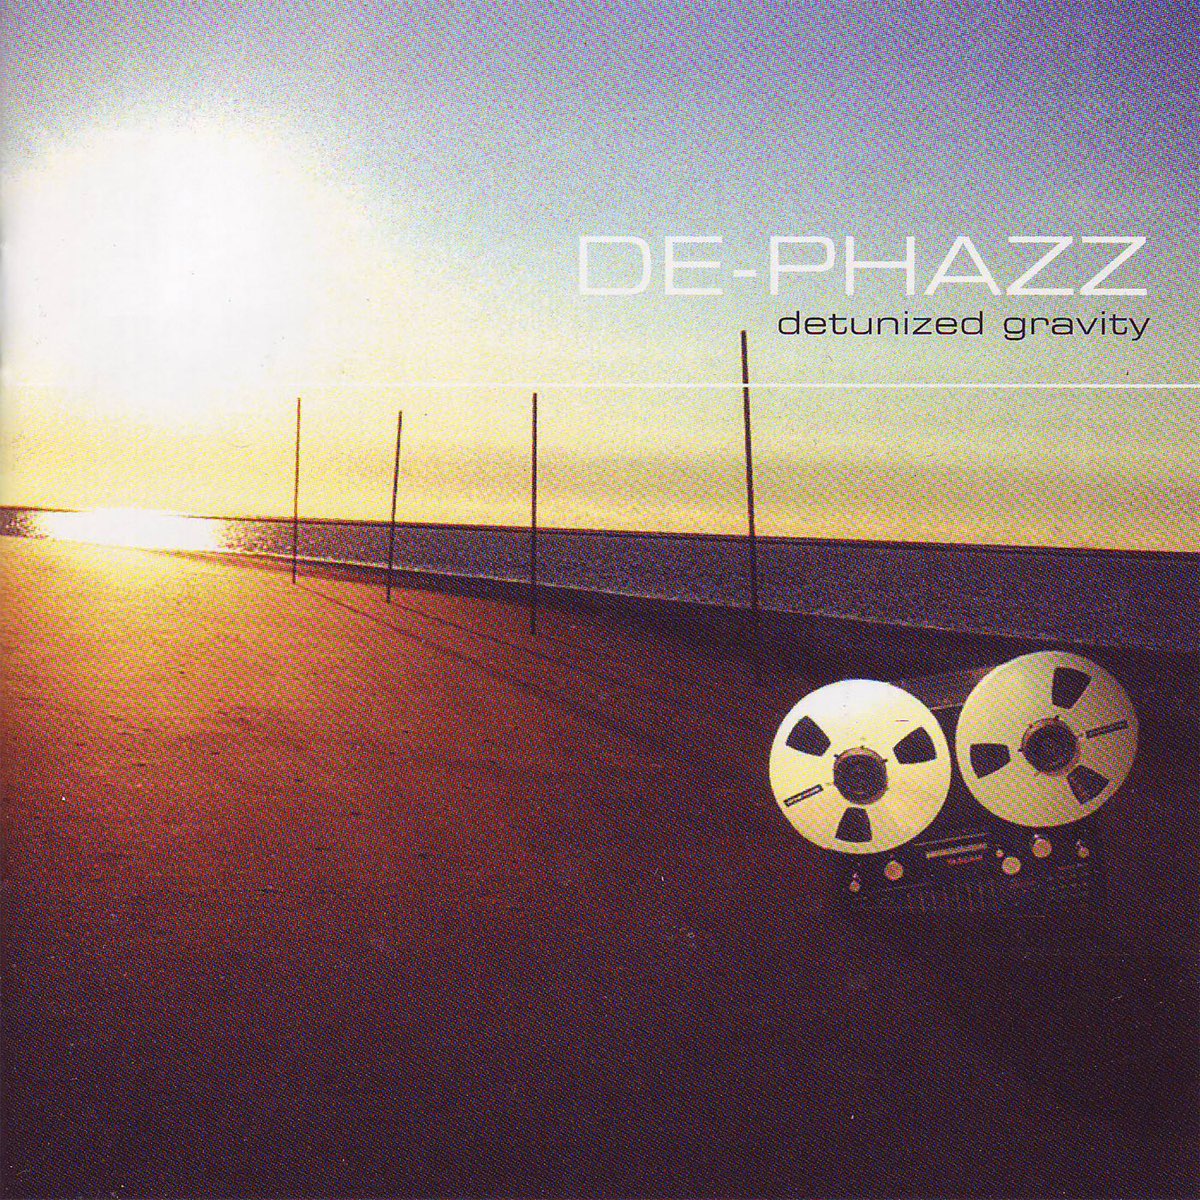 Detunized Gravity - первый альбом De-Phazz, который был выпущен в 1997 году.